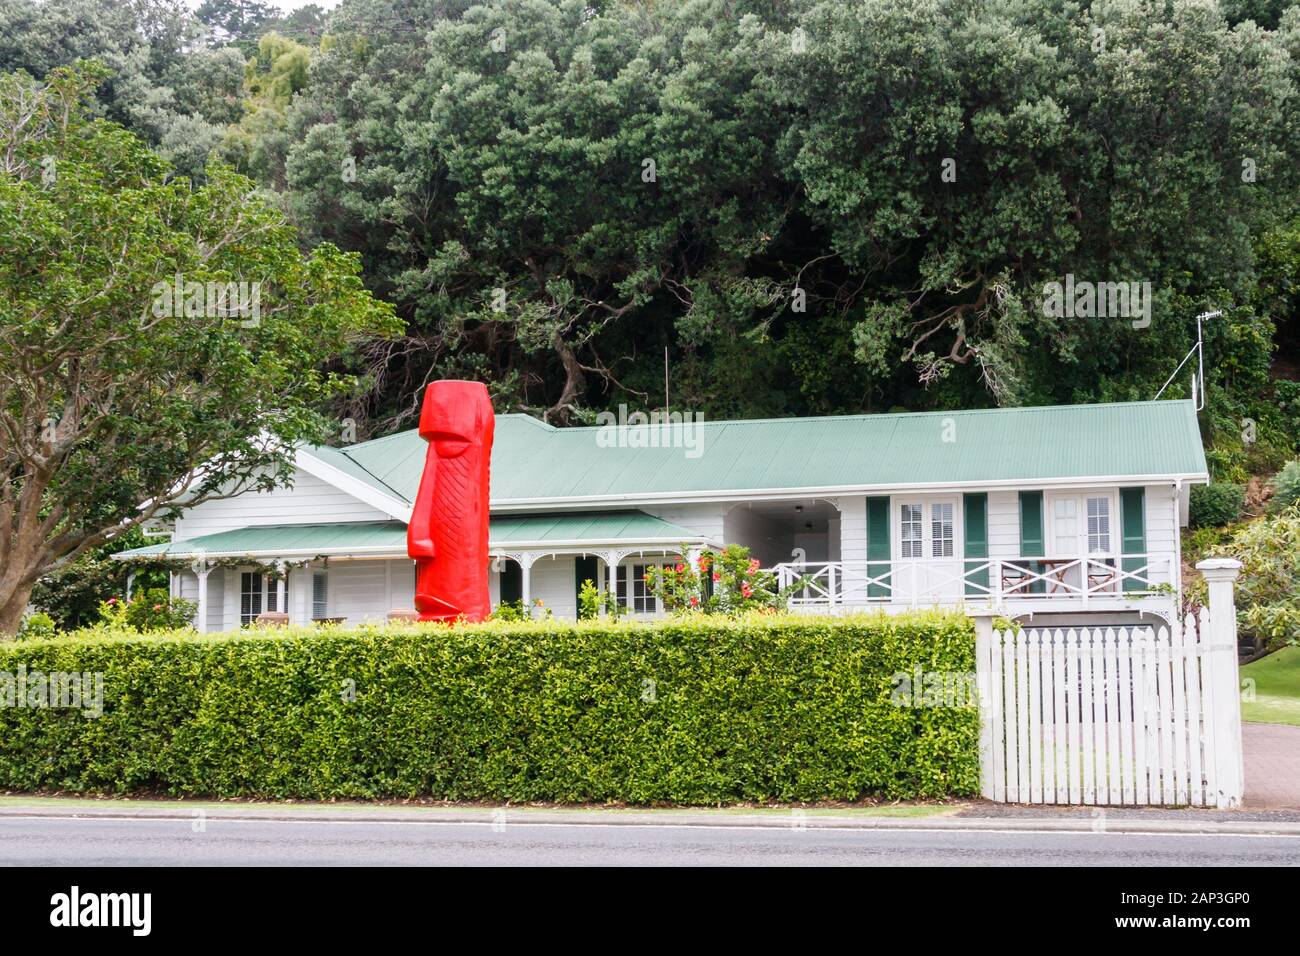 Coromandel, Neuseeland - 6. März 2012: Typisches Haus mit Maori Statue im Garten. Maoris hat seinen Ursprung in Polynesien. Stockfoto